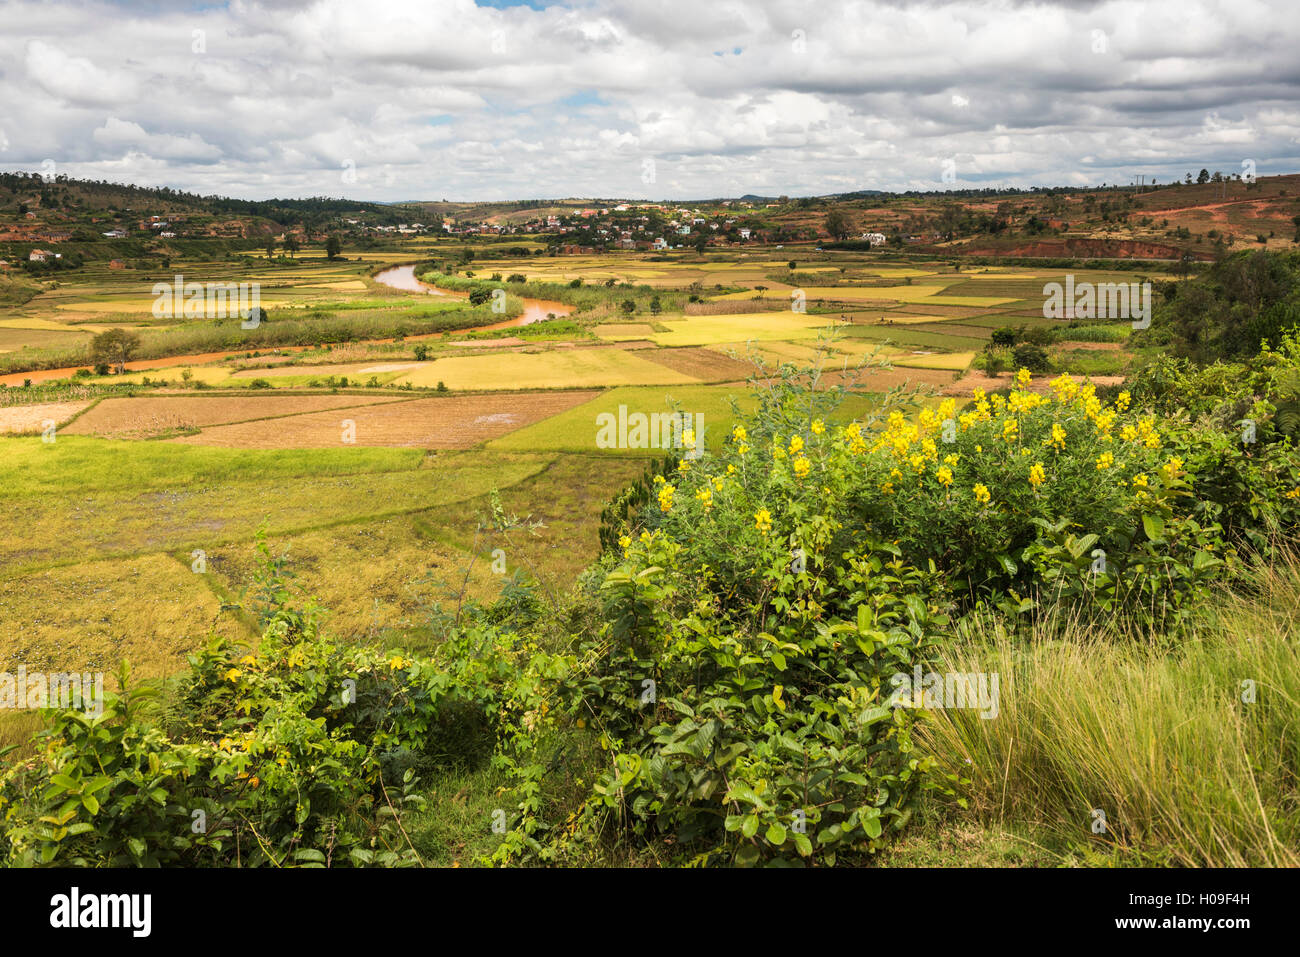 Rice paddy field scenery near Antananarivo, Antananarivo Province, Eastern Madagascar, Africa Stock Photo